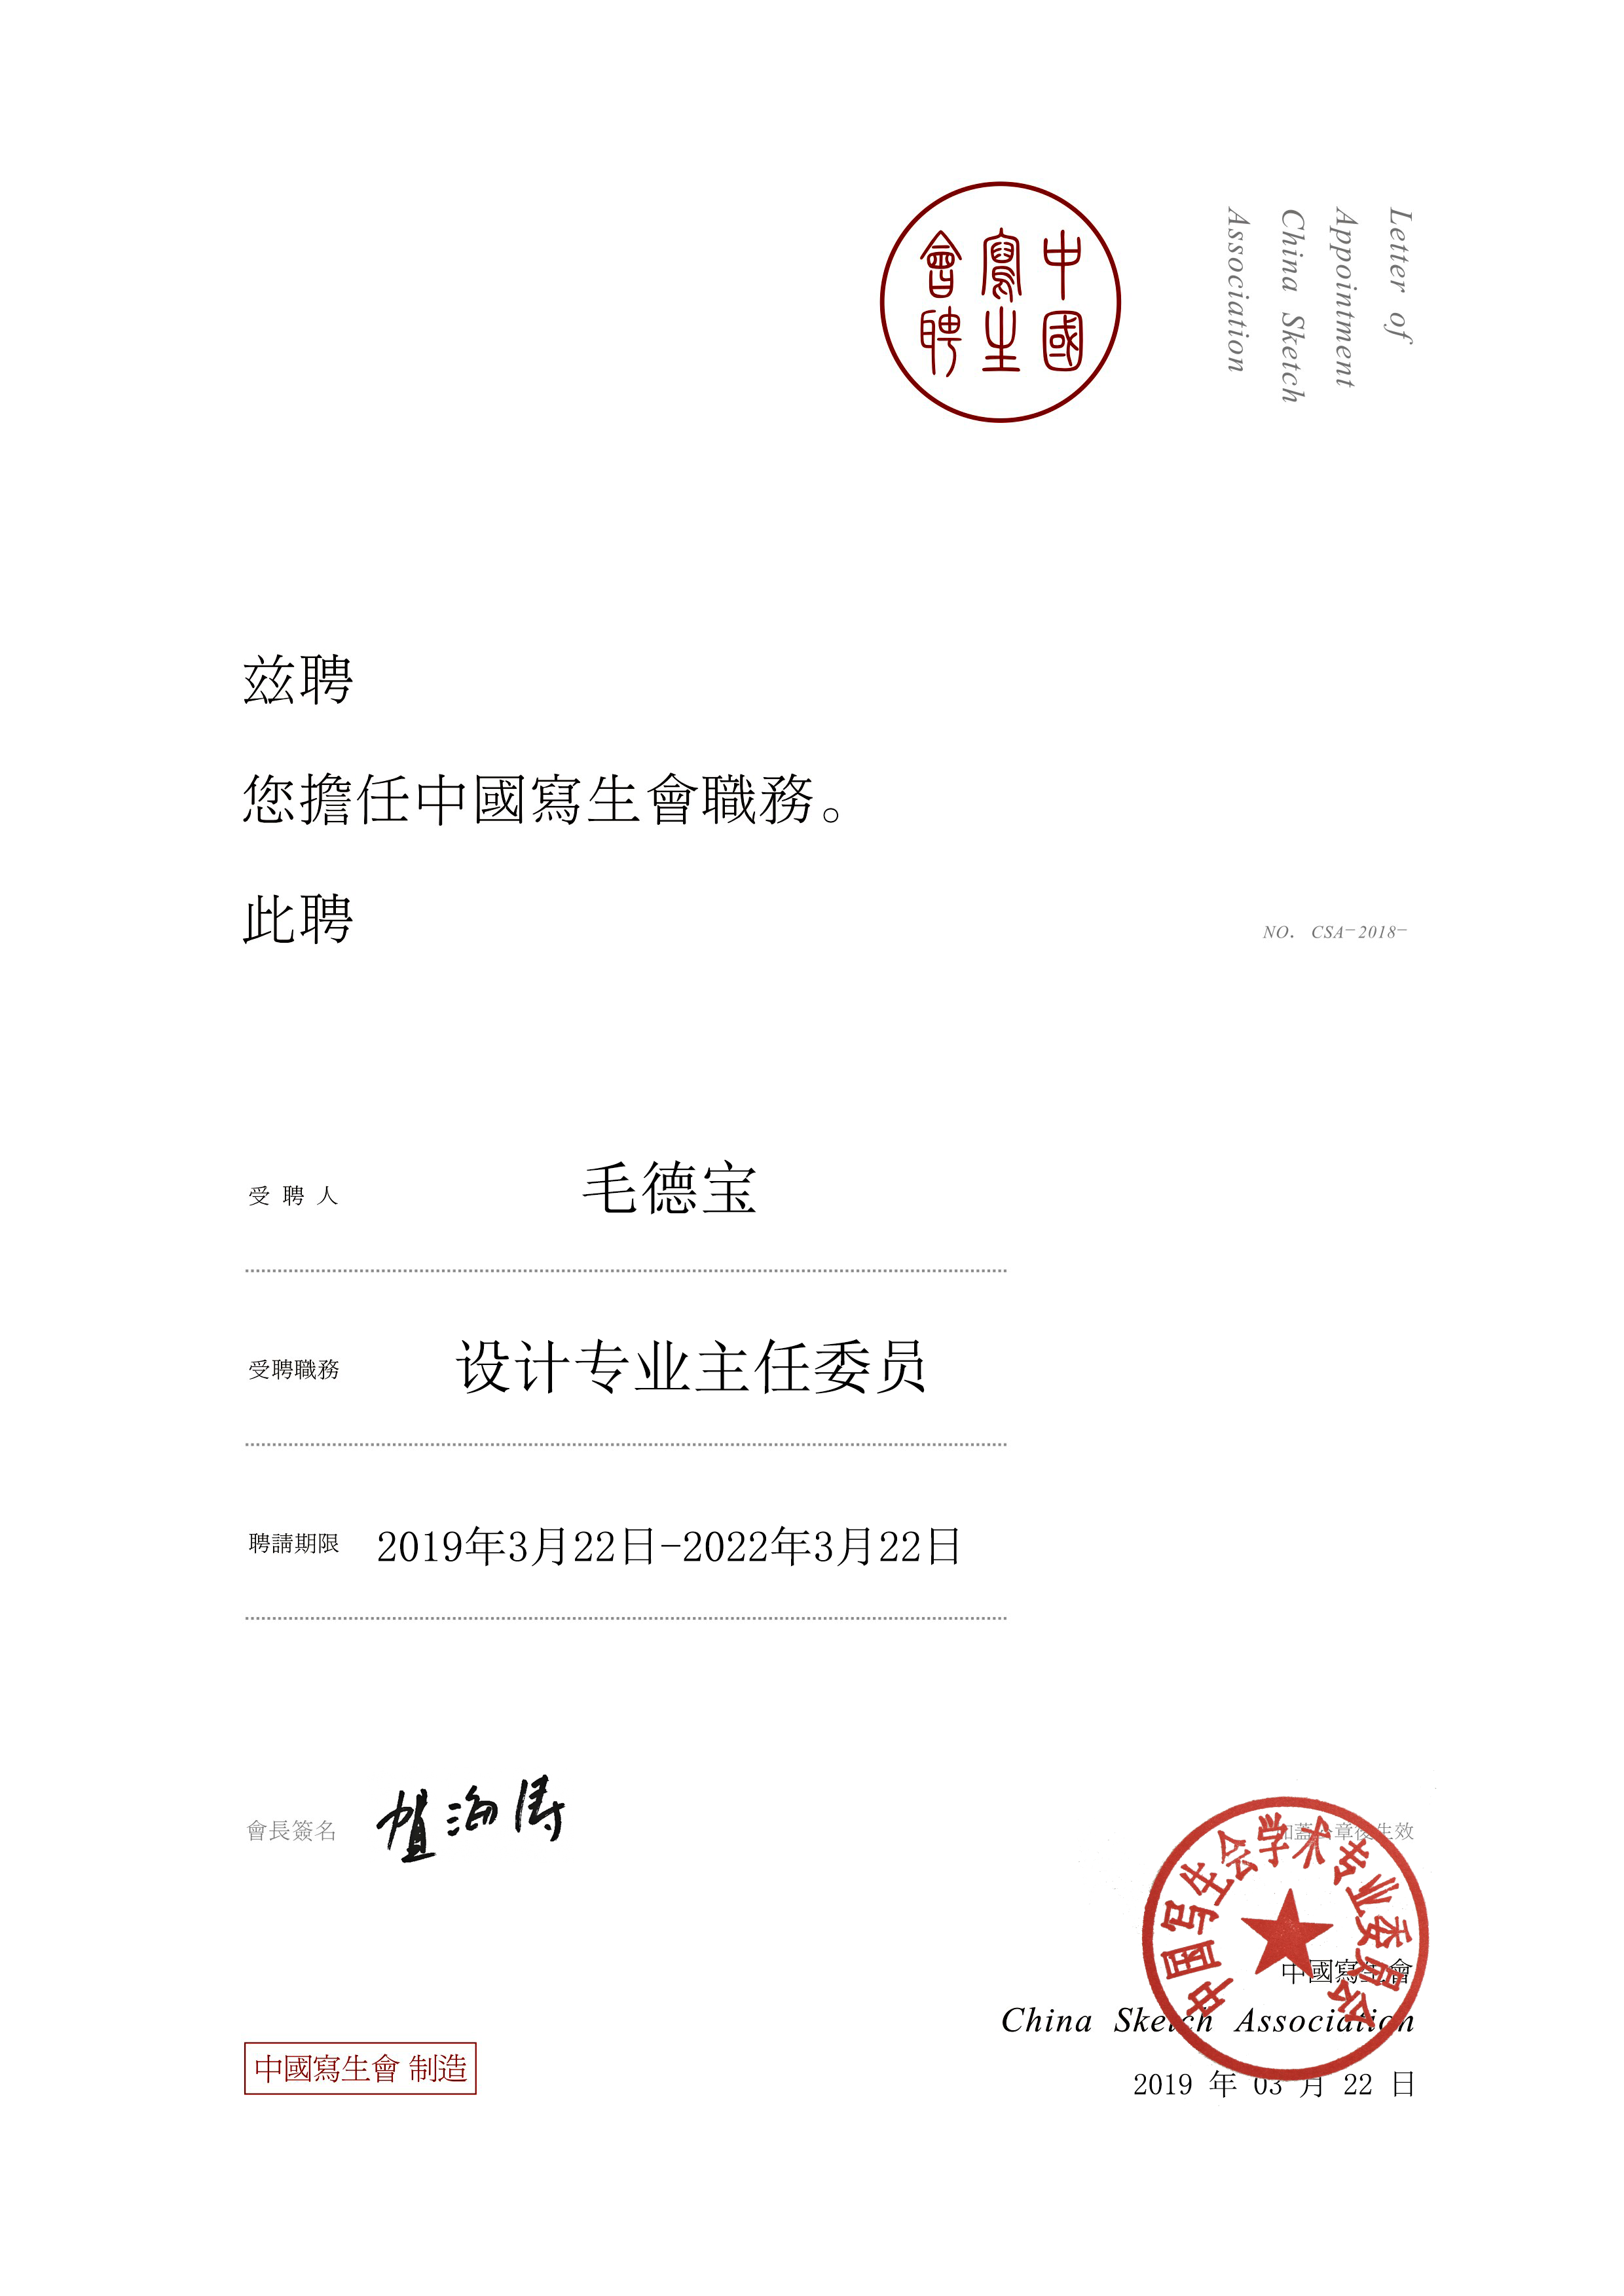 中国美院平面设计系毛德宝教授接受中国写生会设计专业主任委员会聘书